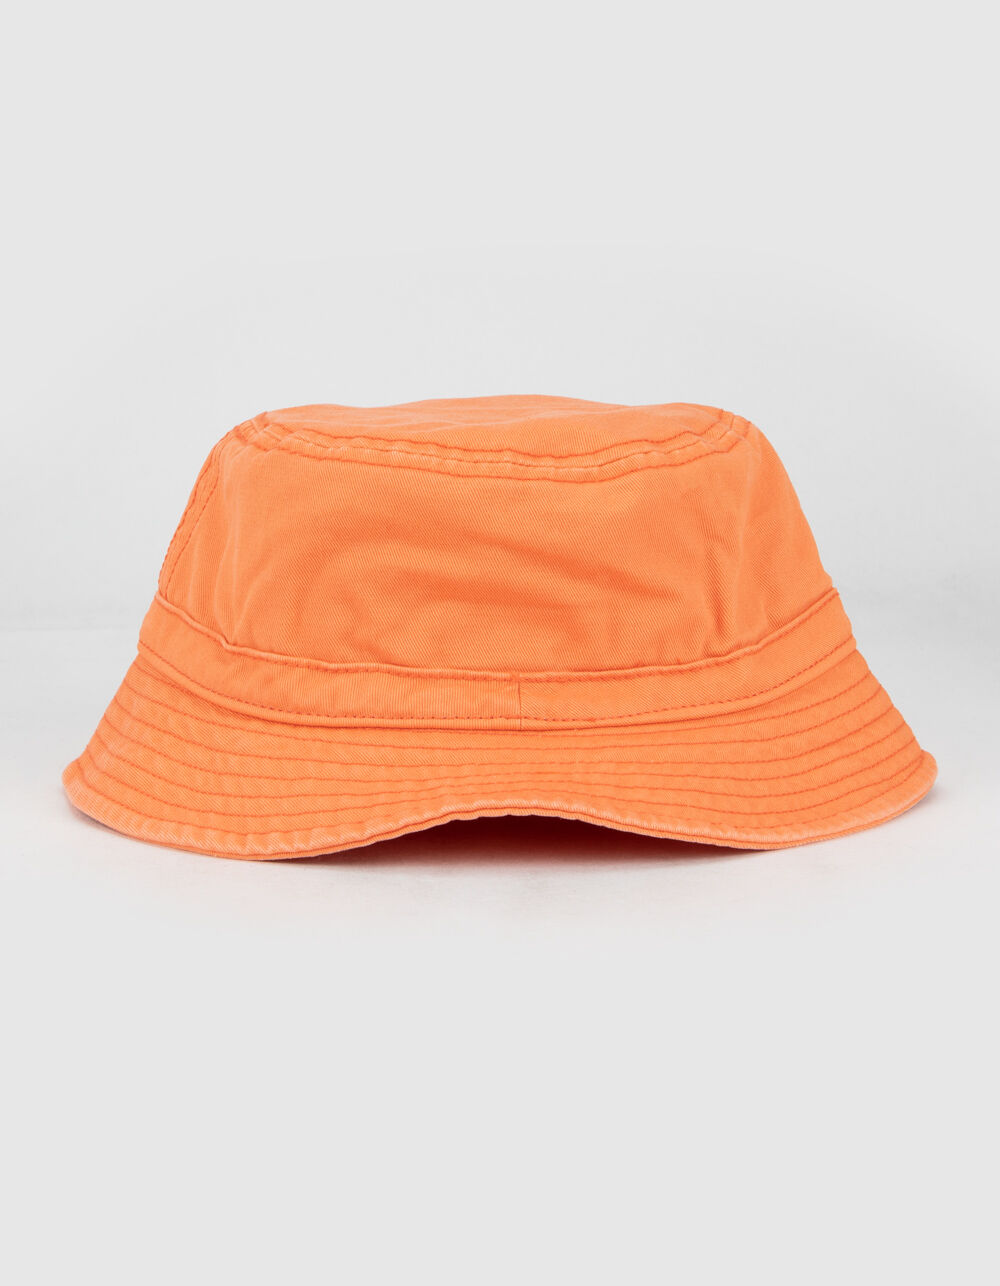 ADIDAS Originals Washed Orange Bucket Hat - CANTALOUPE | Tillys